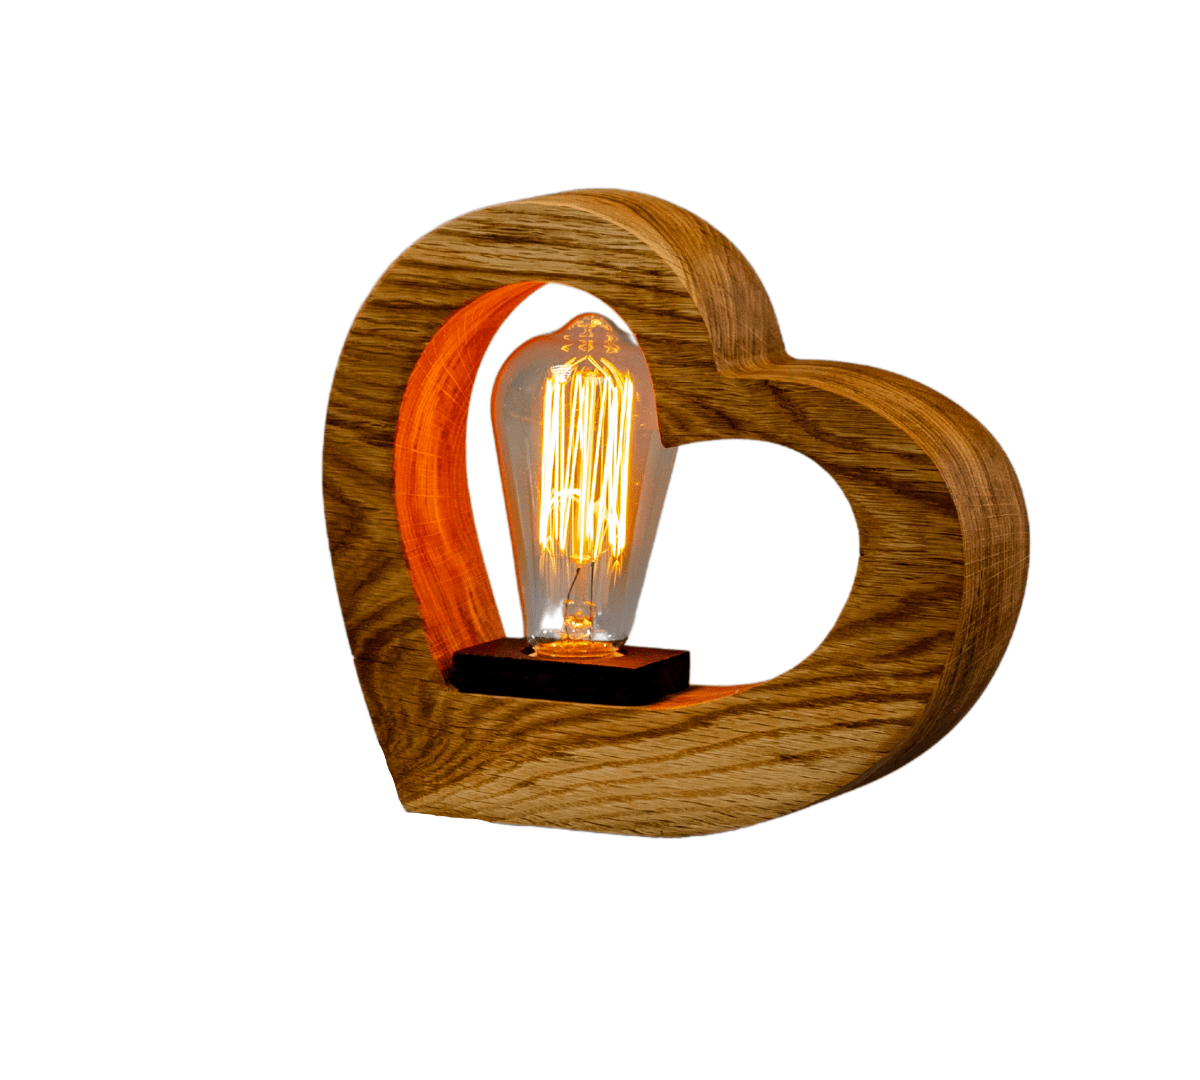 JTNlab LAMP WOODEN VINTAGE LAMP - HEART